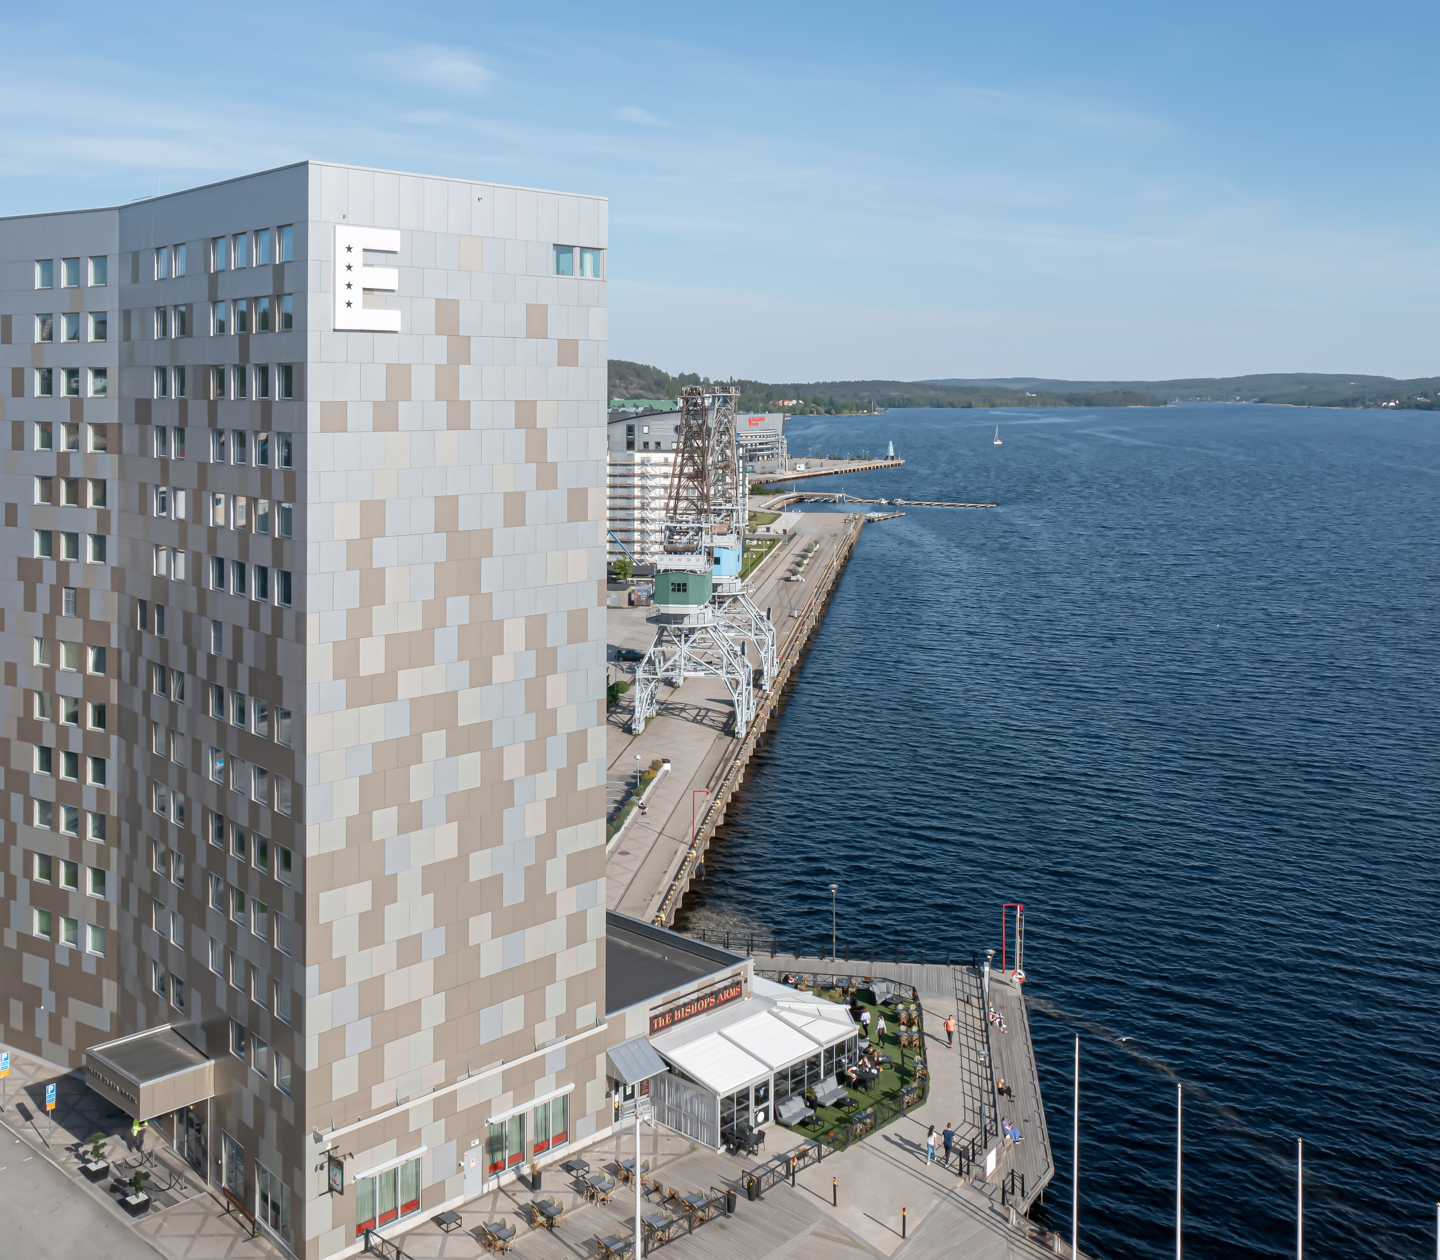 Fasaden av Elite Plaza Hotel i Örnsköldsvik med Bottenhavet bakom 